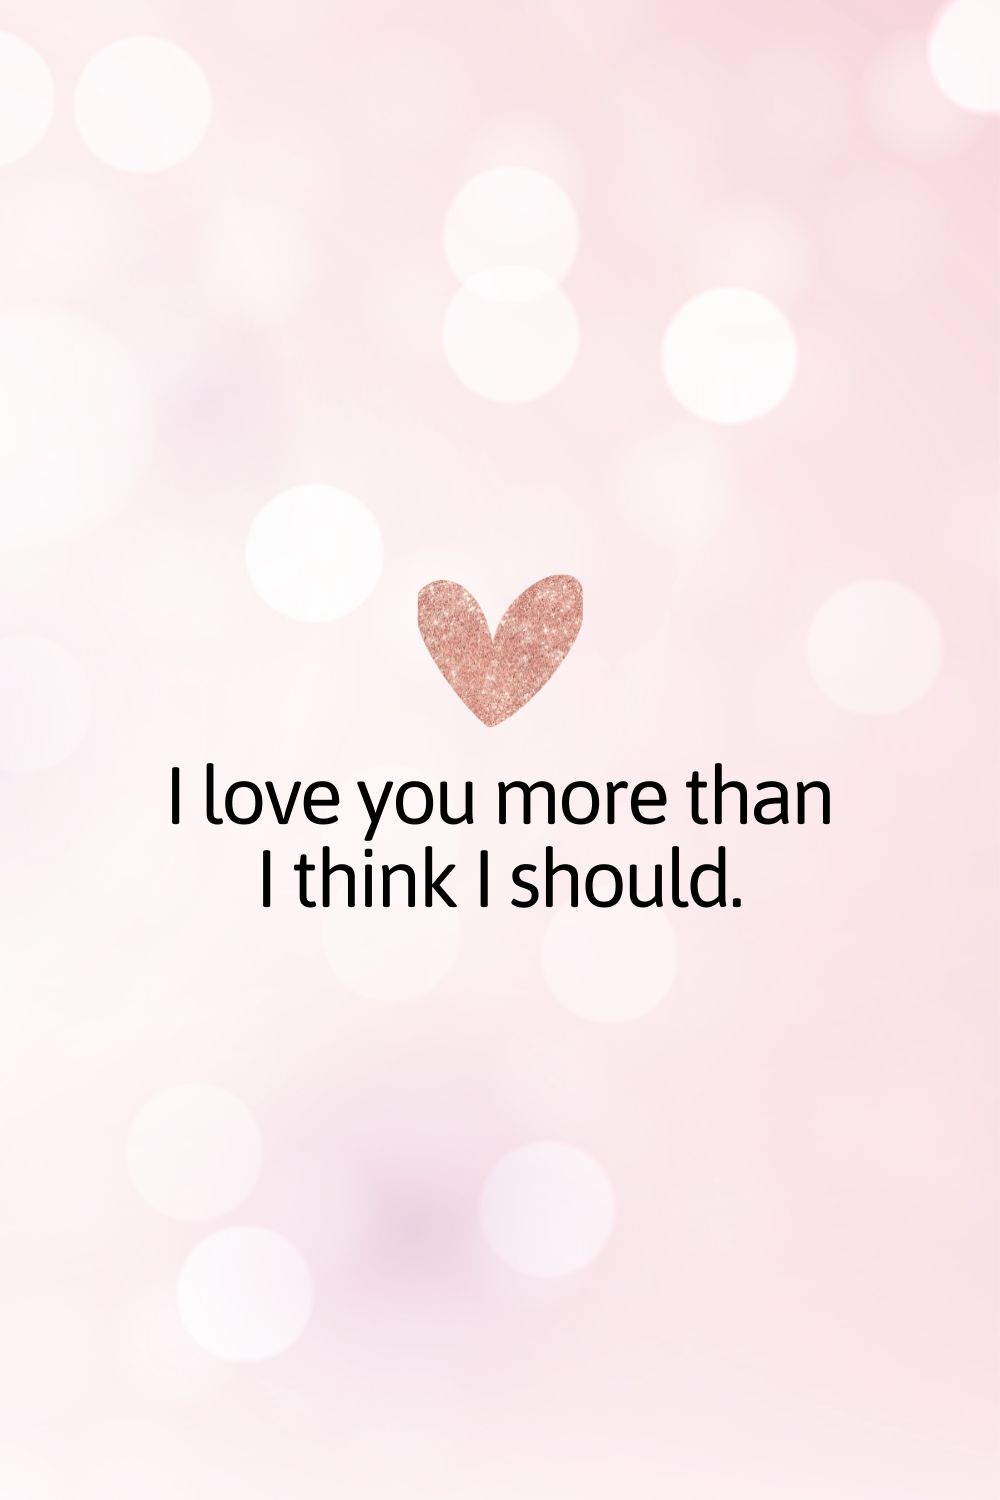 Te quiero más de lo que creo que debería.